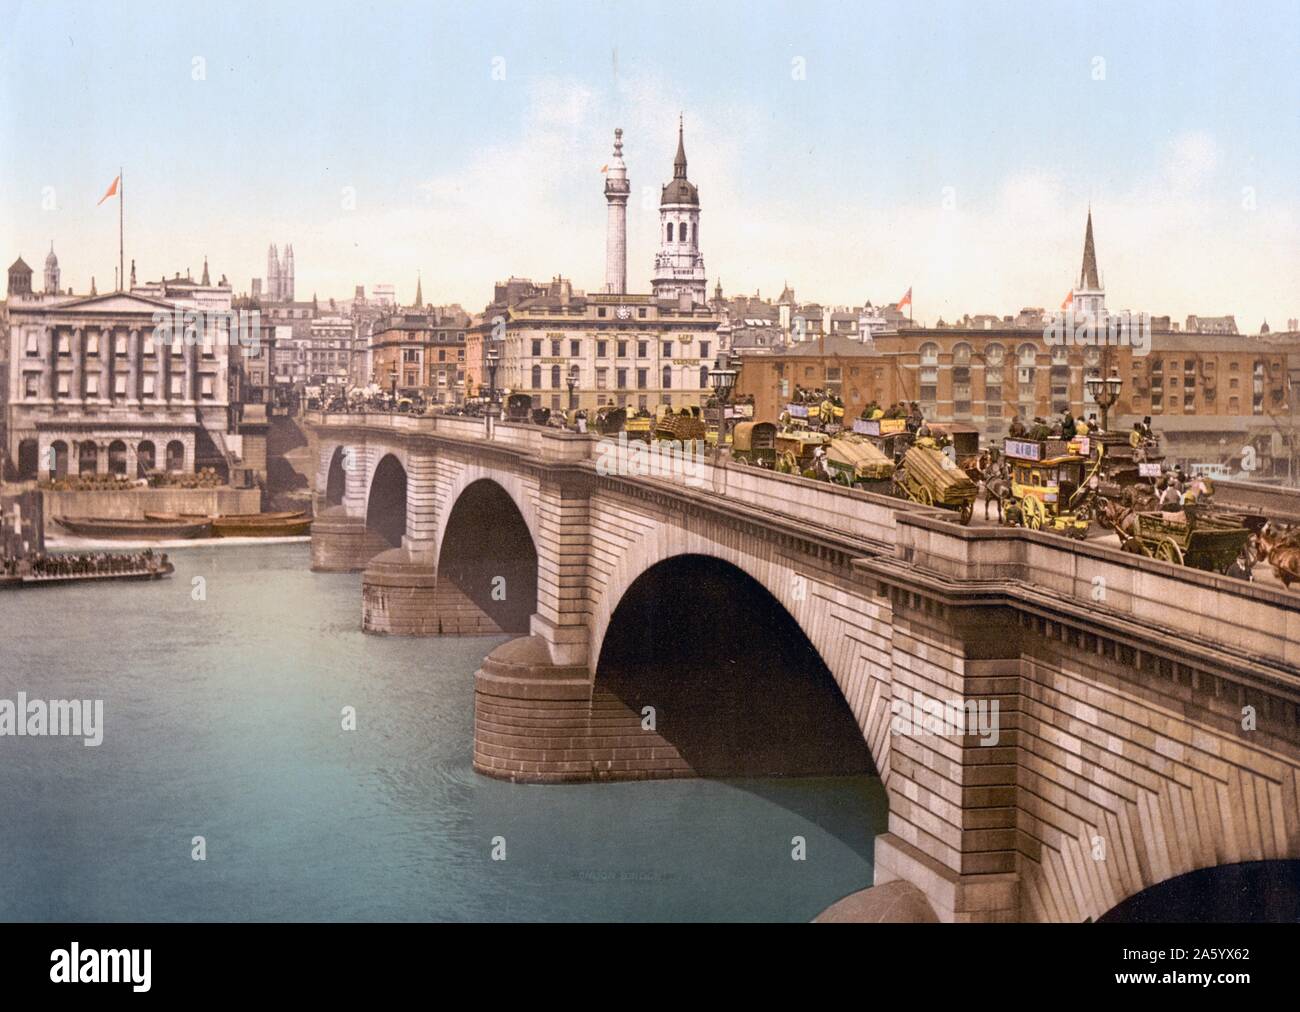 Pferdekutschen, Wagen und Straßenbahnen überqueren Sie die London Bridge, London, England 1890 Stockfoto